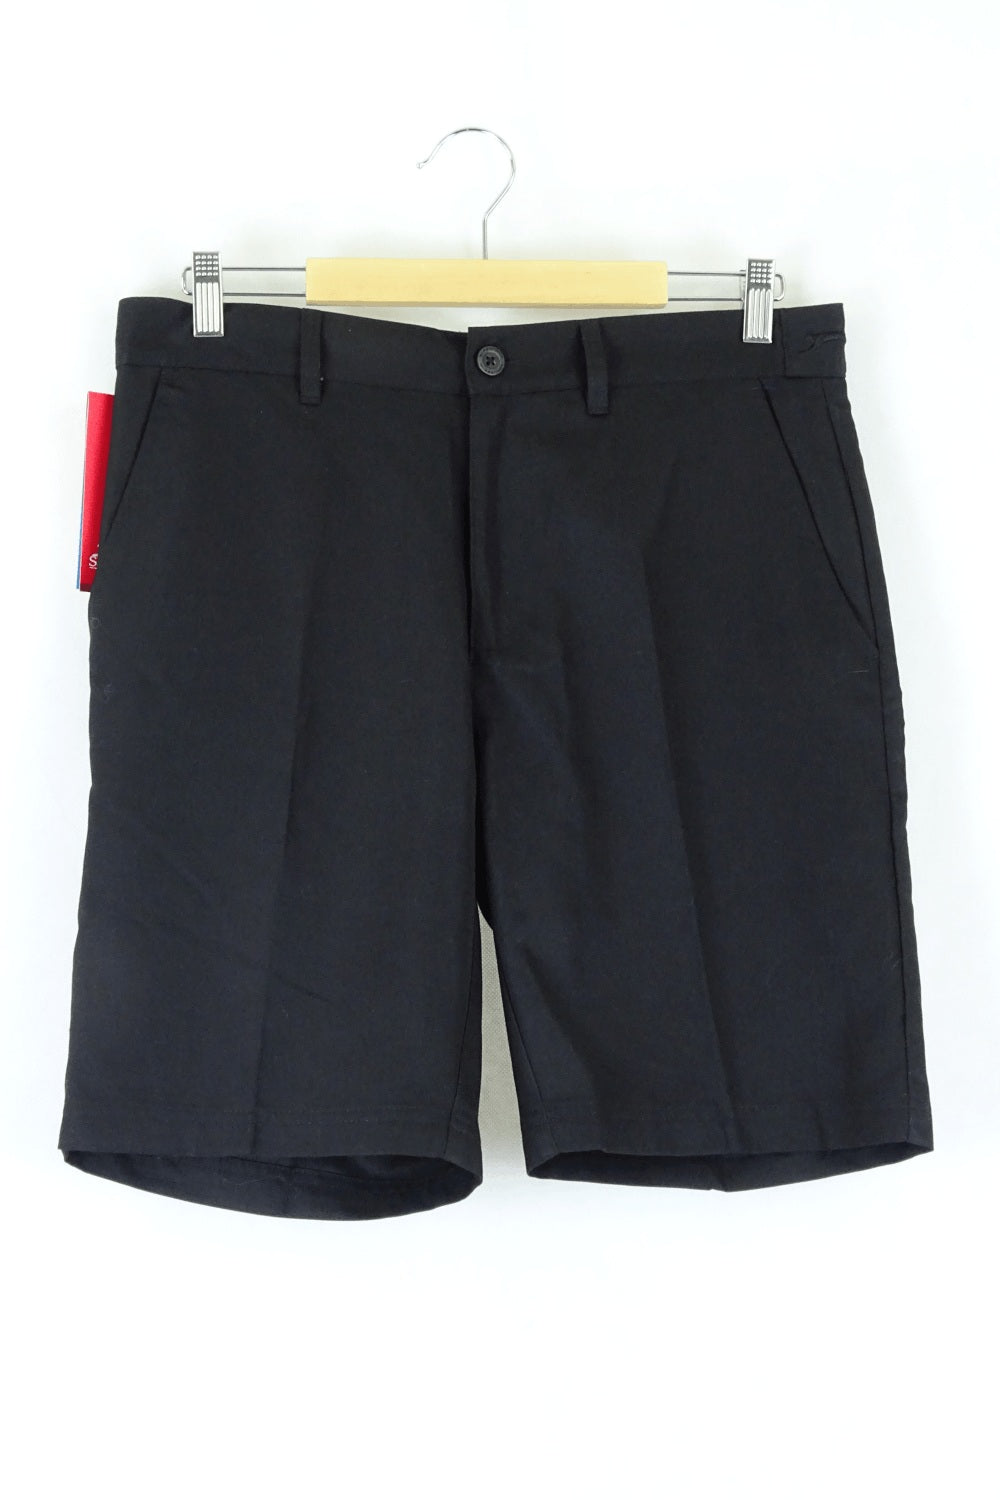 Slazenger Black Shorts 32